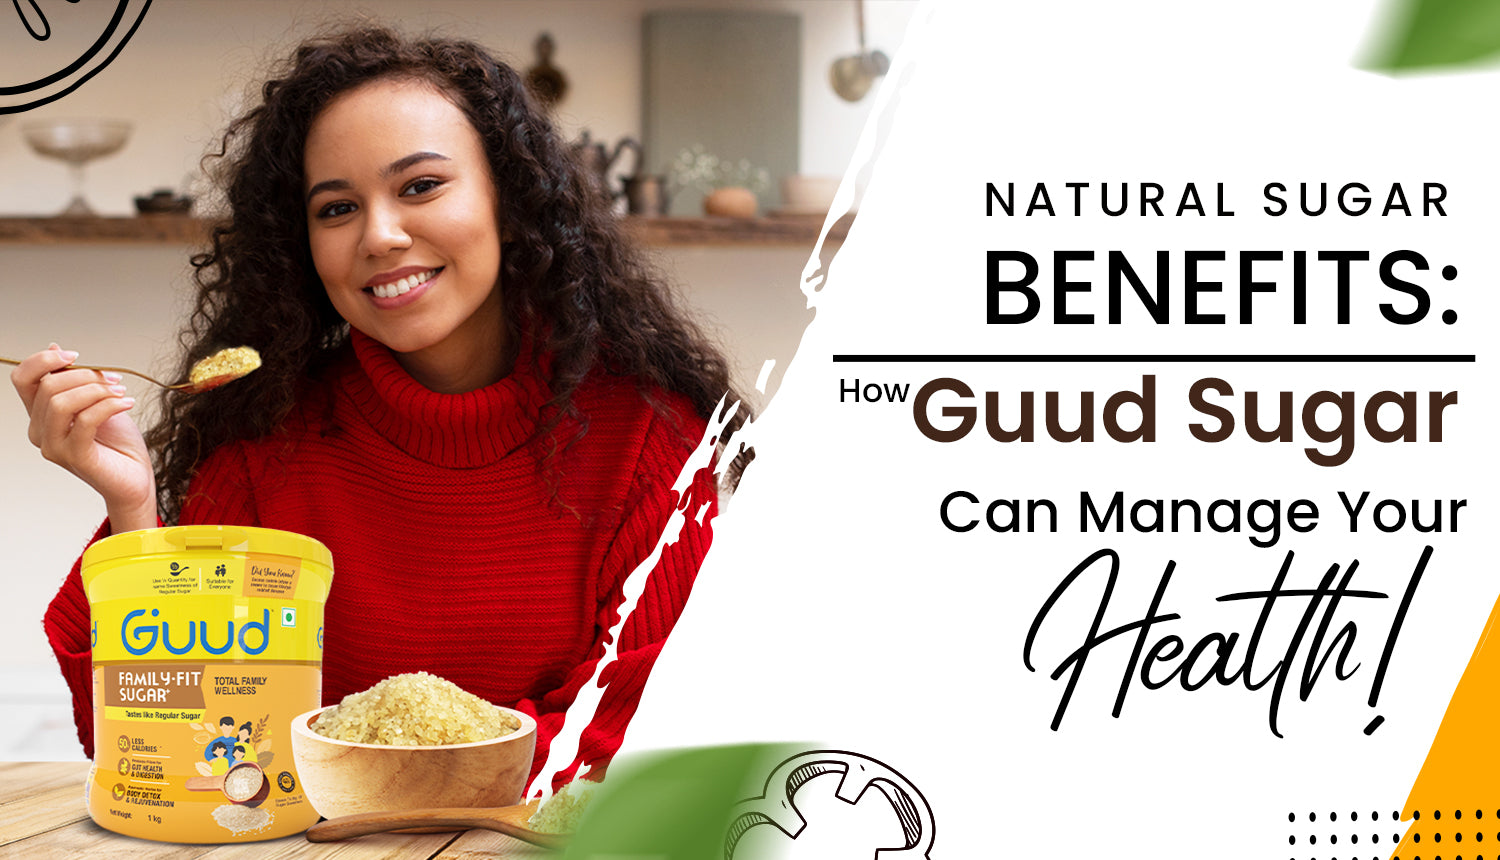 natural sugar - Guud Sugar benefits